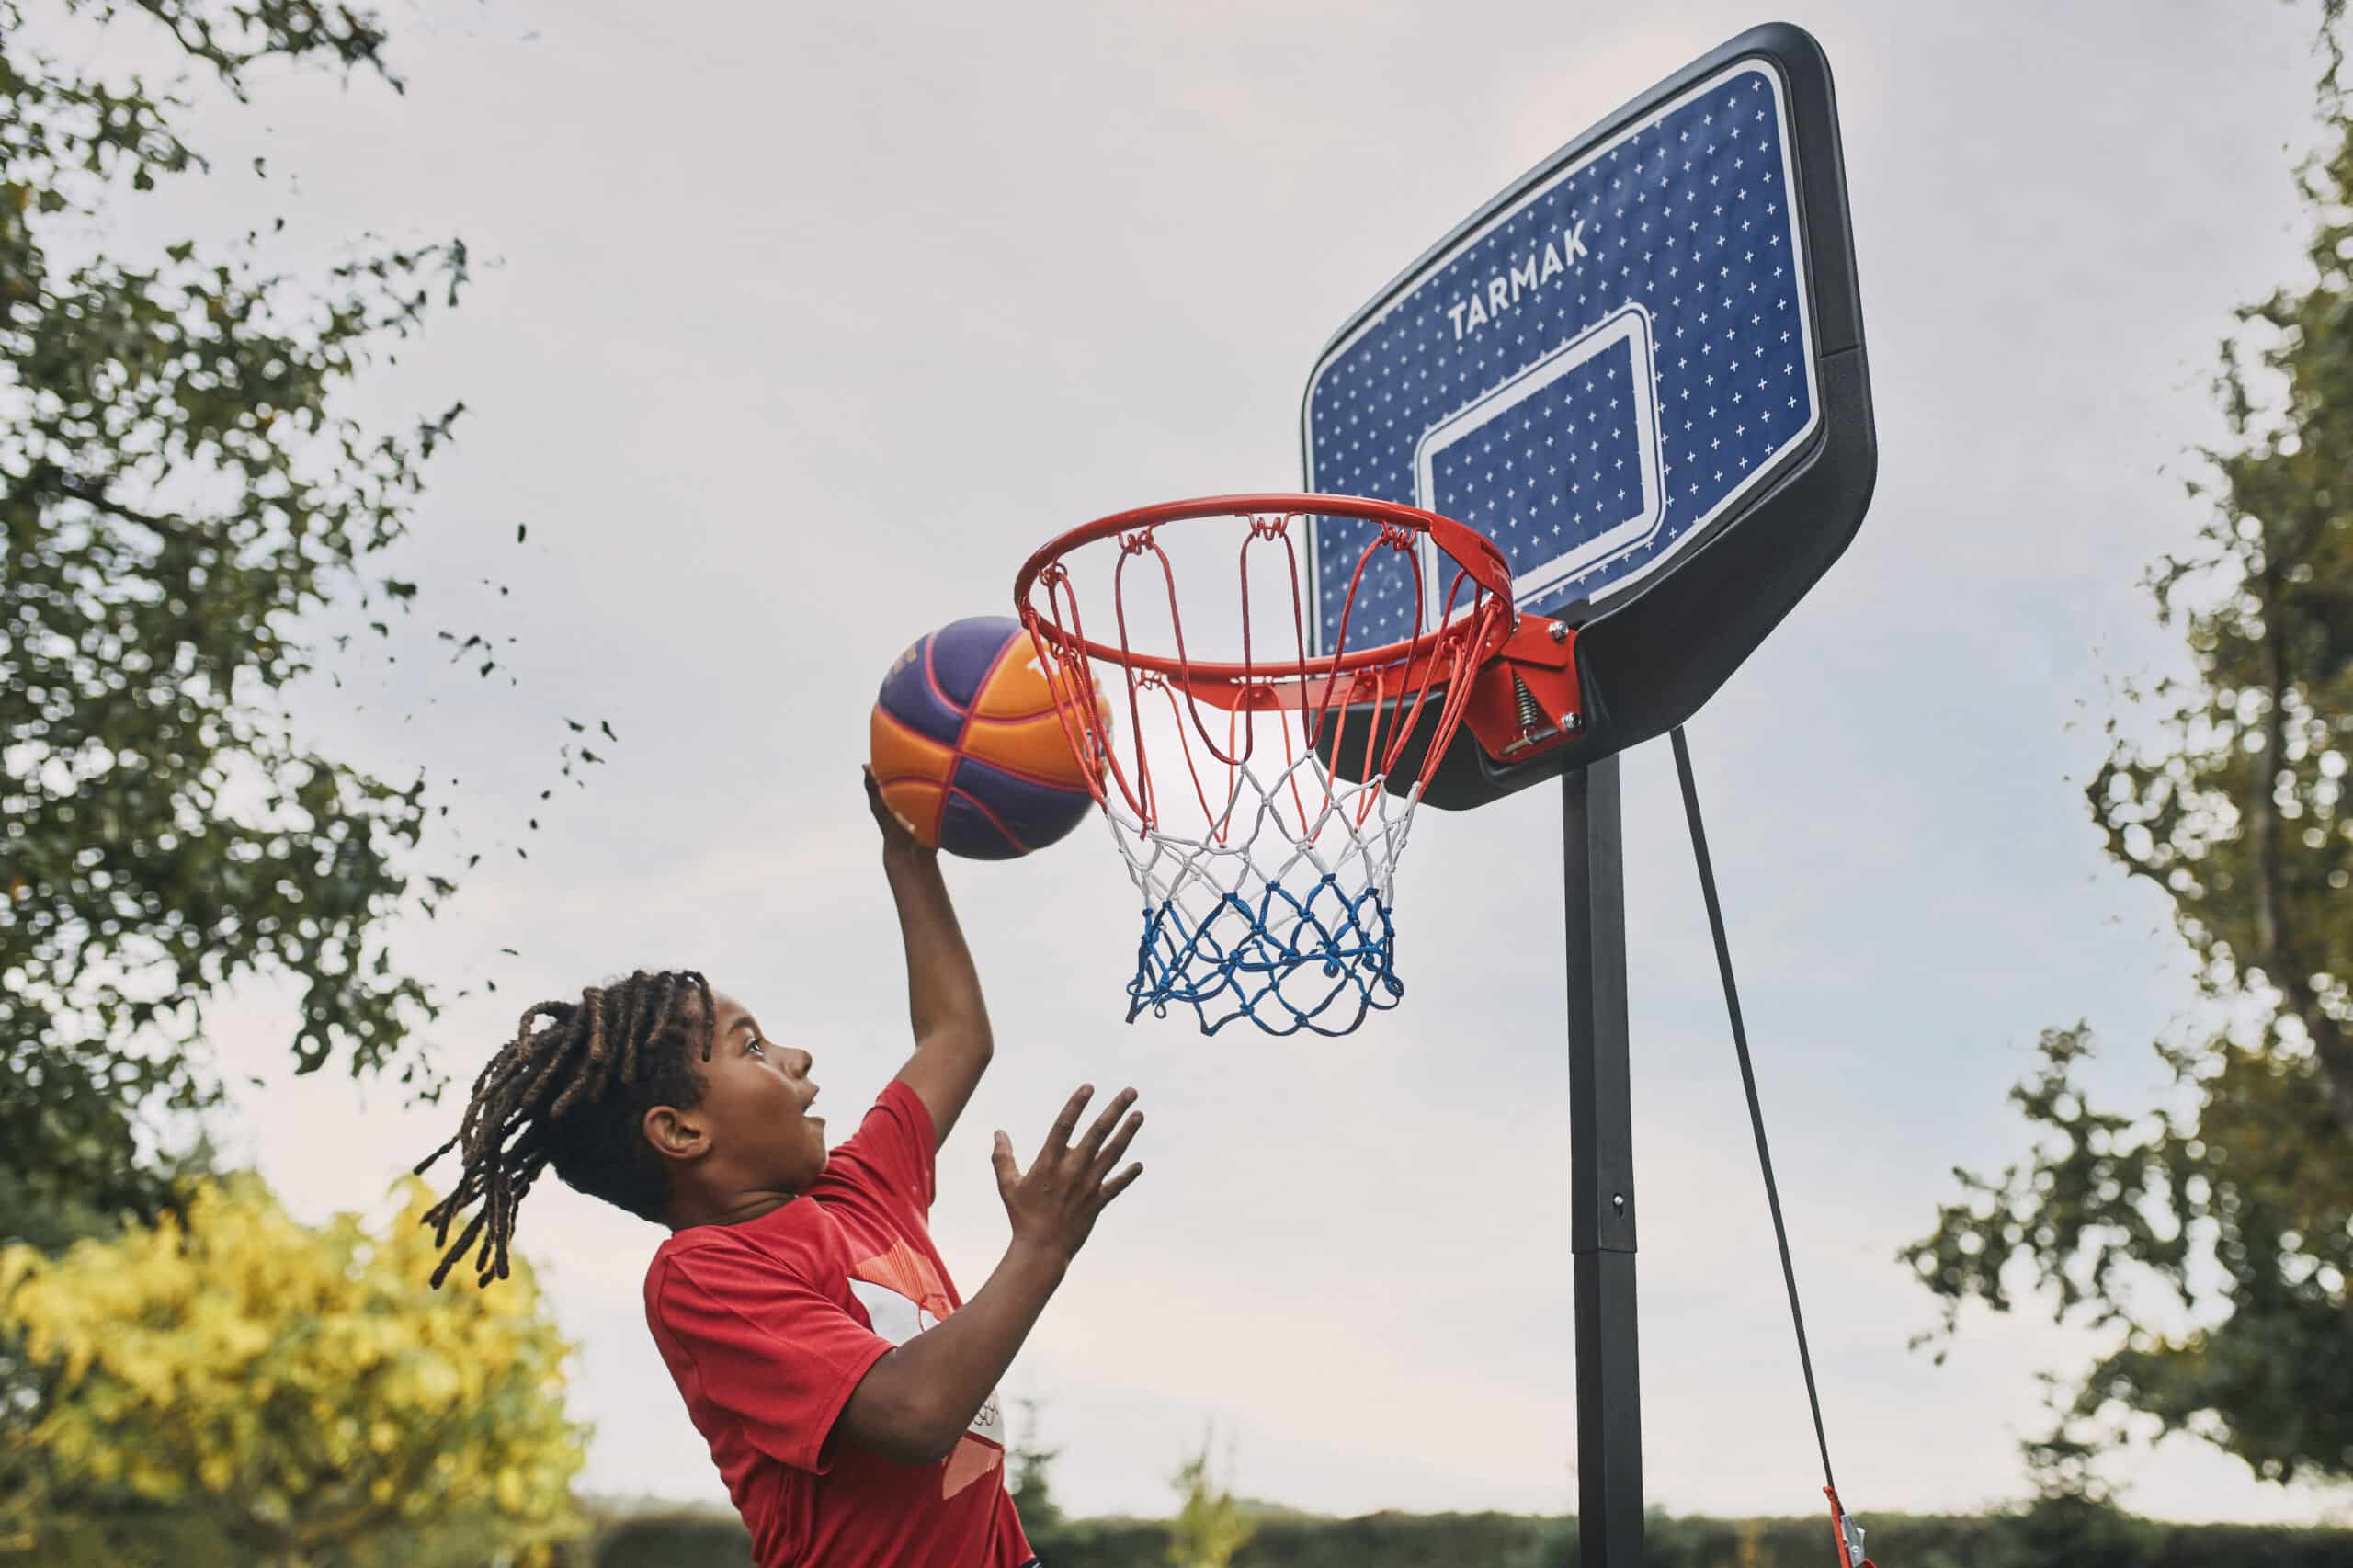 Panier de Basket-Ball pour Enfants, Jeu de Basket-Ball Réglable en